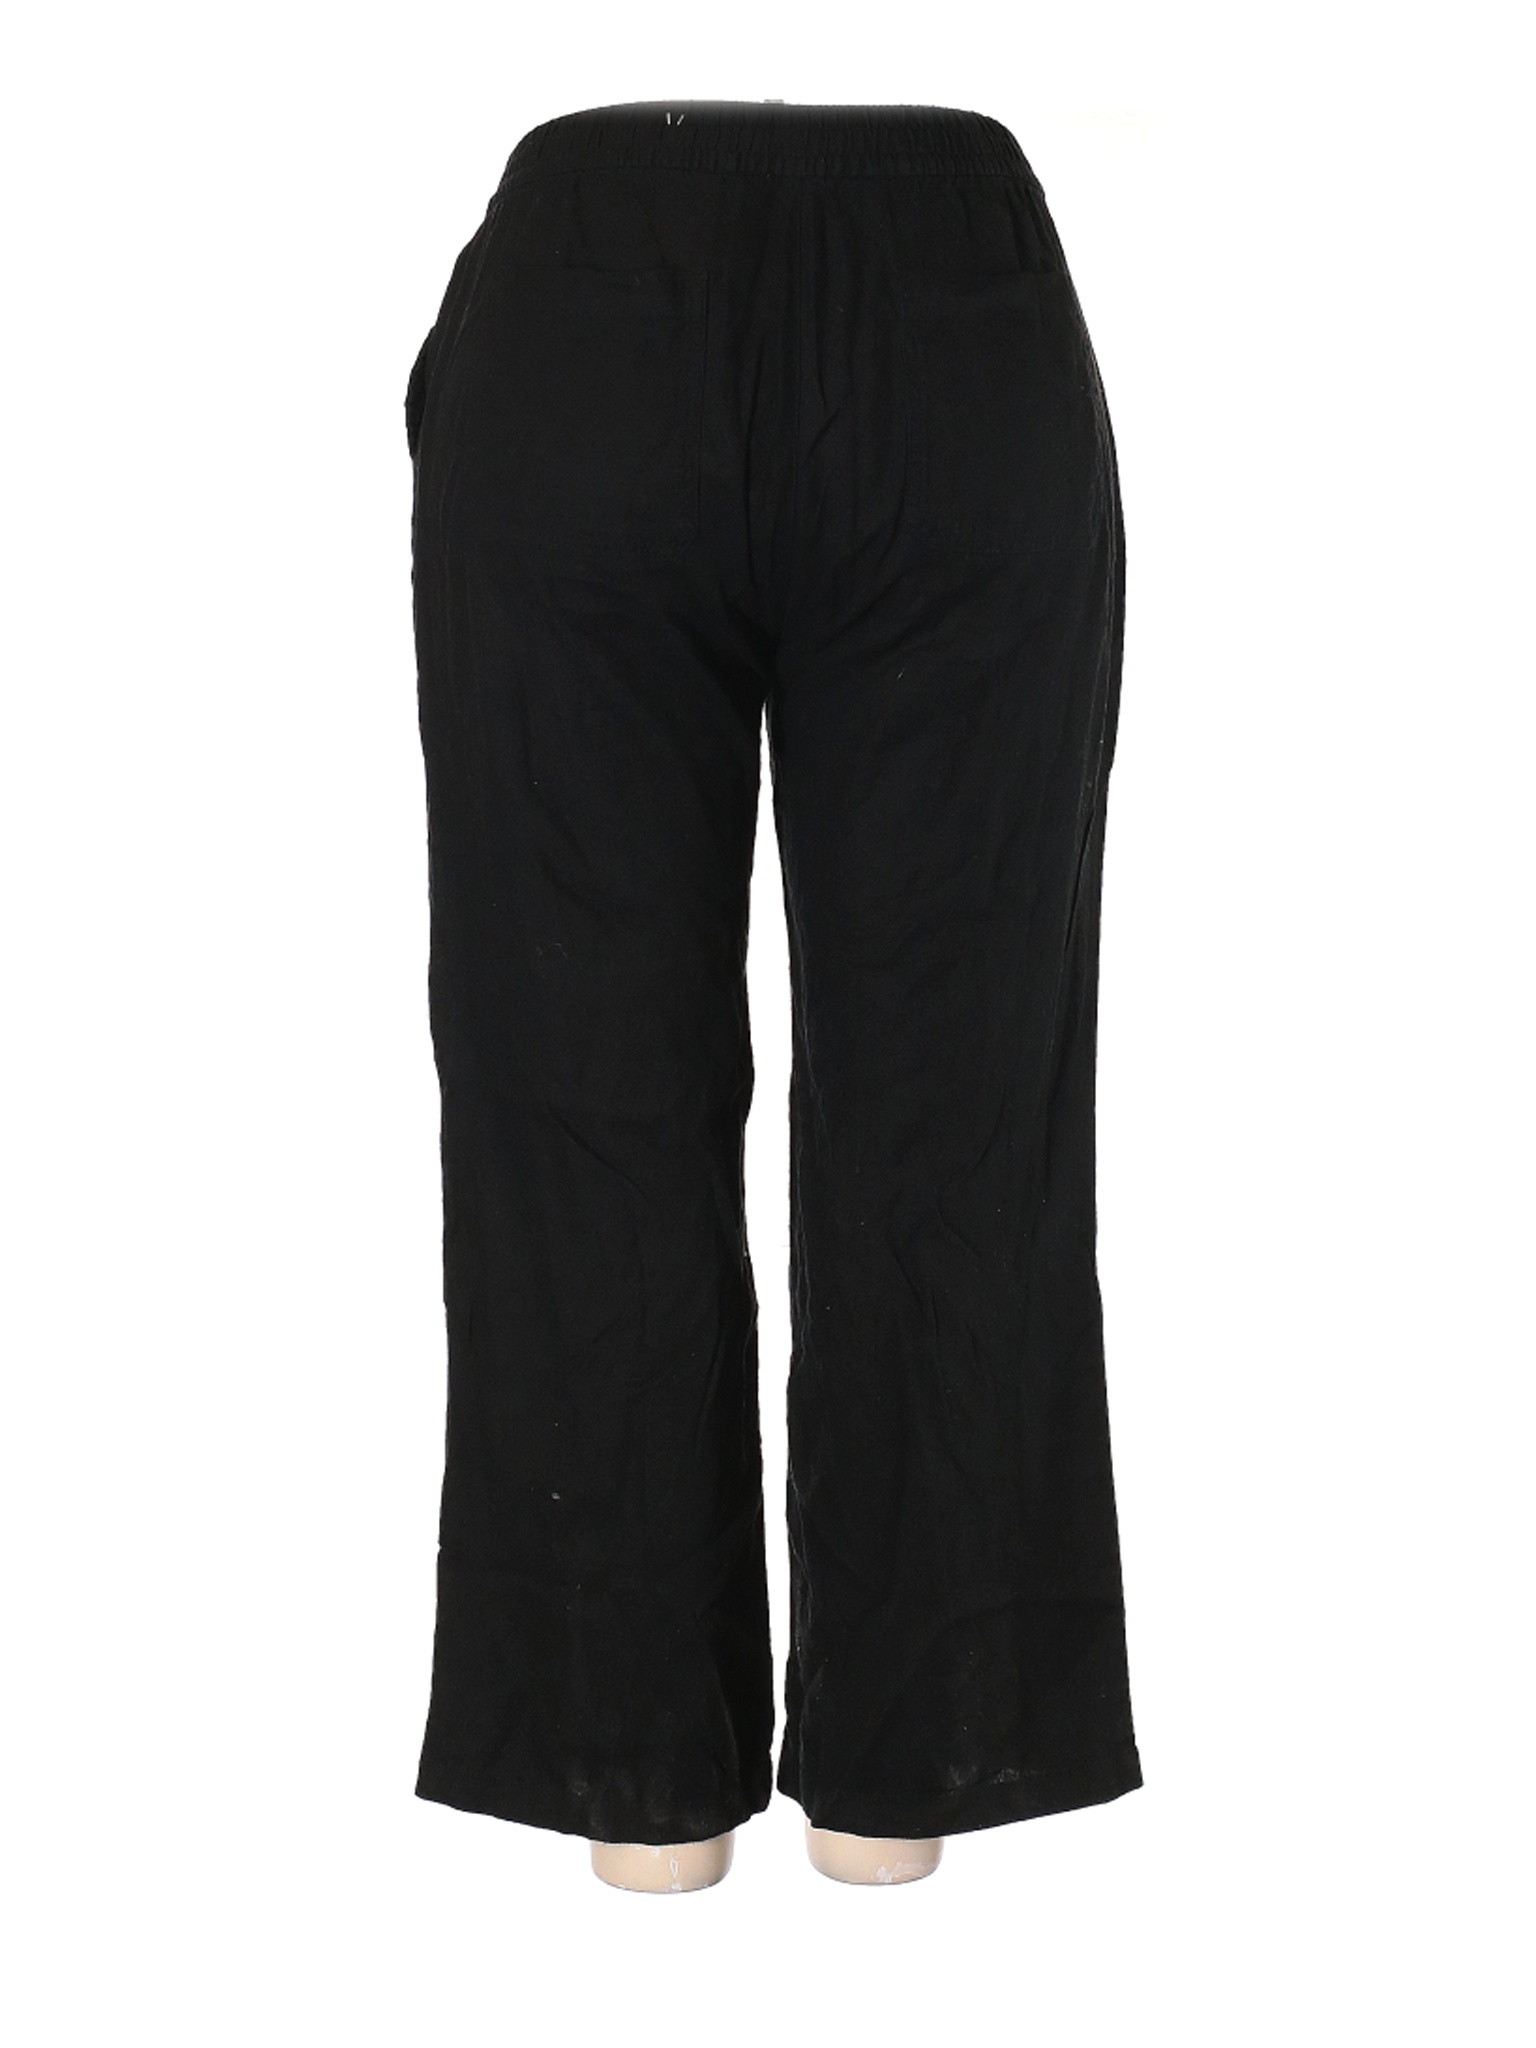 Old Navy Women Black Linen Pants XL | eBay